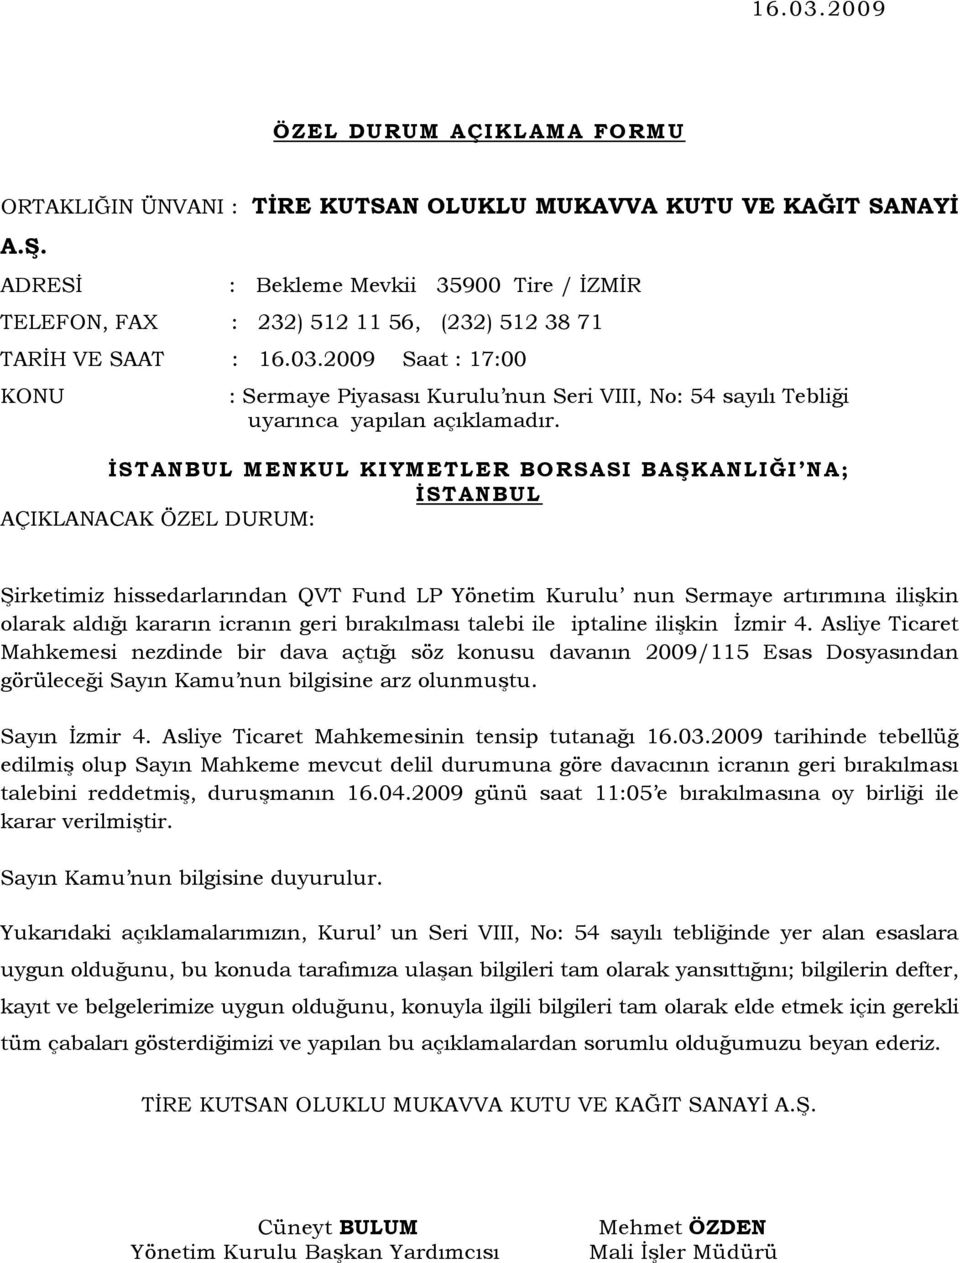 geri bırakılması talebi ile iptaline ilişkin İzmir 4. Asliye Ticaret Mahkemesi nezdinde bir dava açtığı söz konusu davanın 2009/115 Esas Dosyasından görüleceği Sayın Kamu nun bilgisine arz olunmuştu.